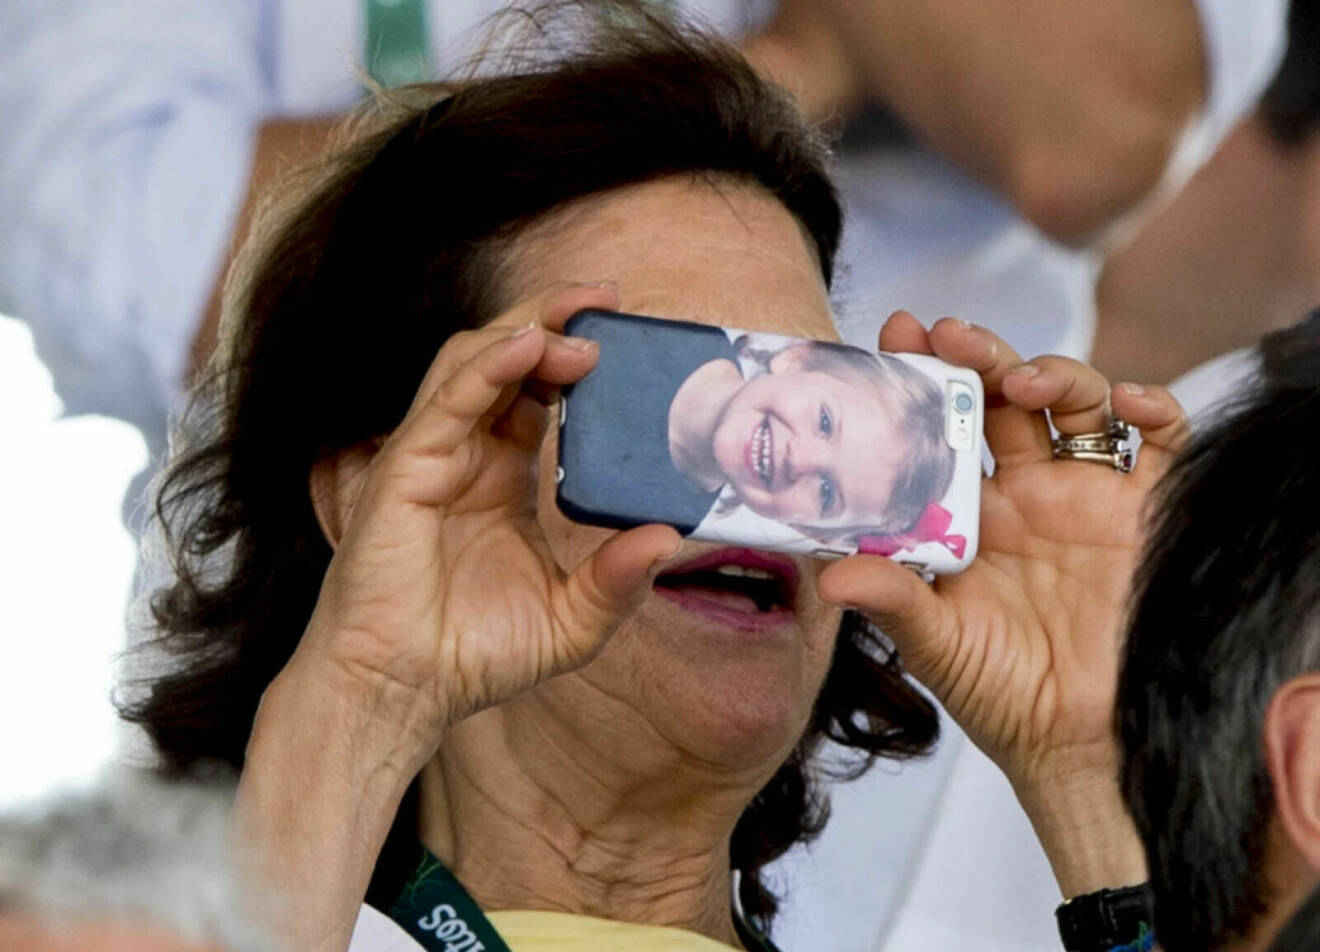 Drottning Silvia tar en bild med sin mobil som har prinsessan Estelle på mobilskalet